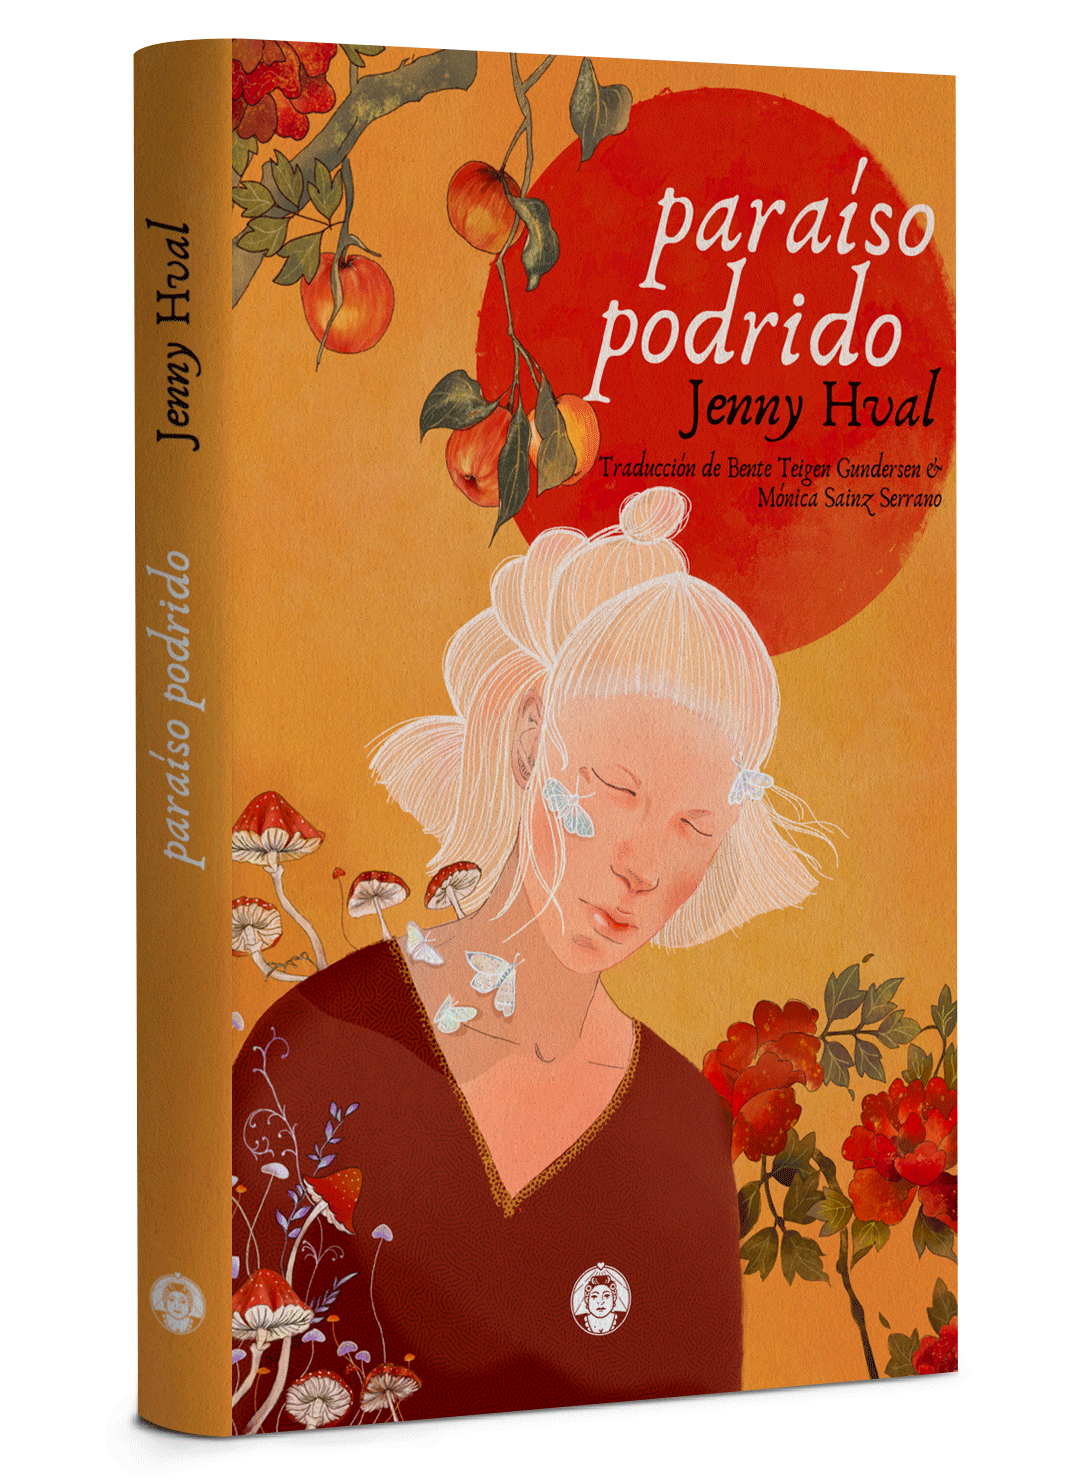 Zenda recomienda: Paraíso podrido, de Jenny Hval